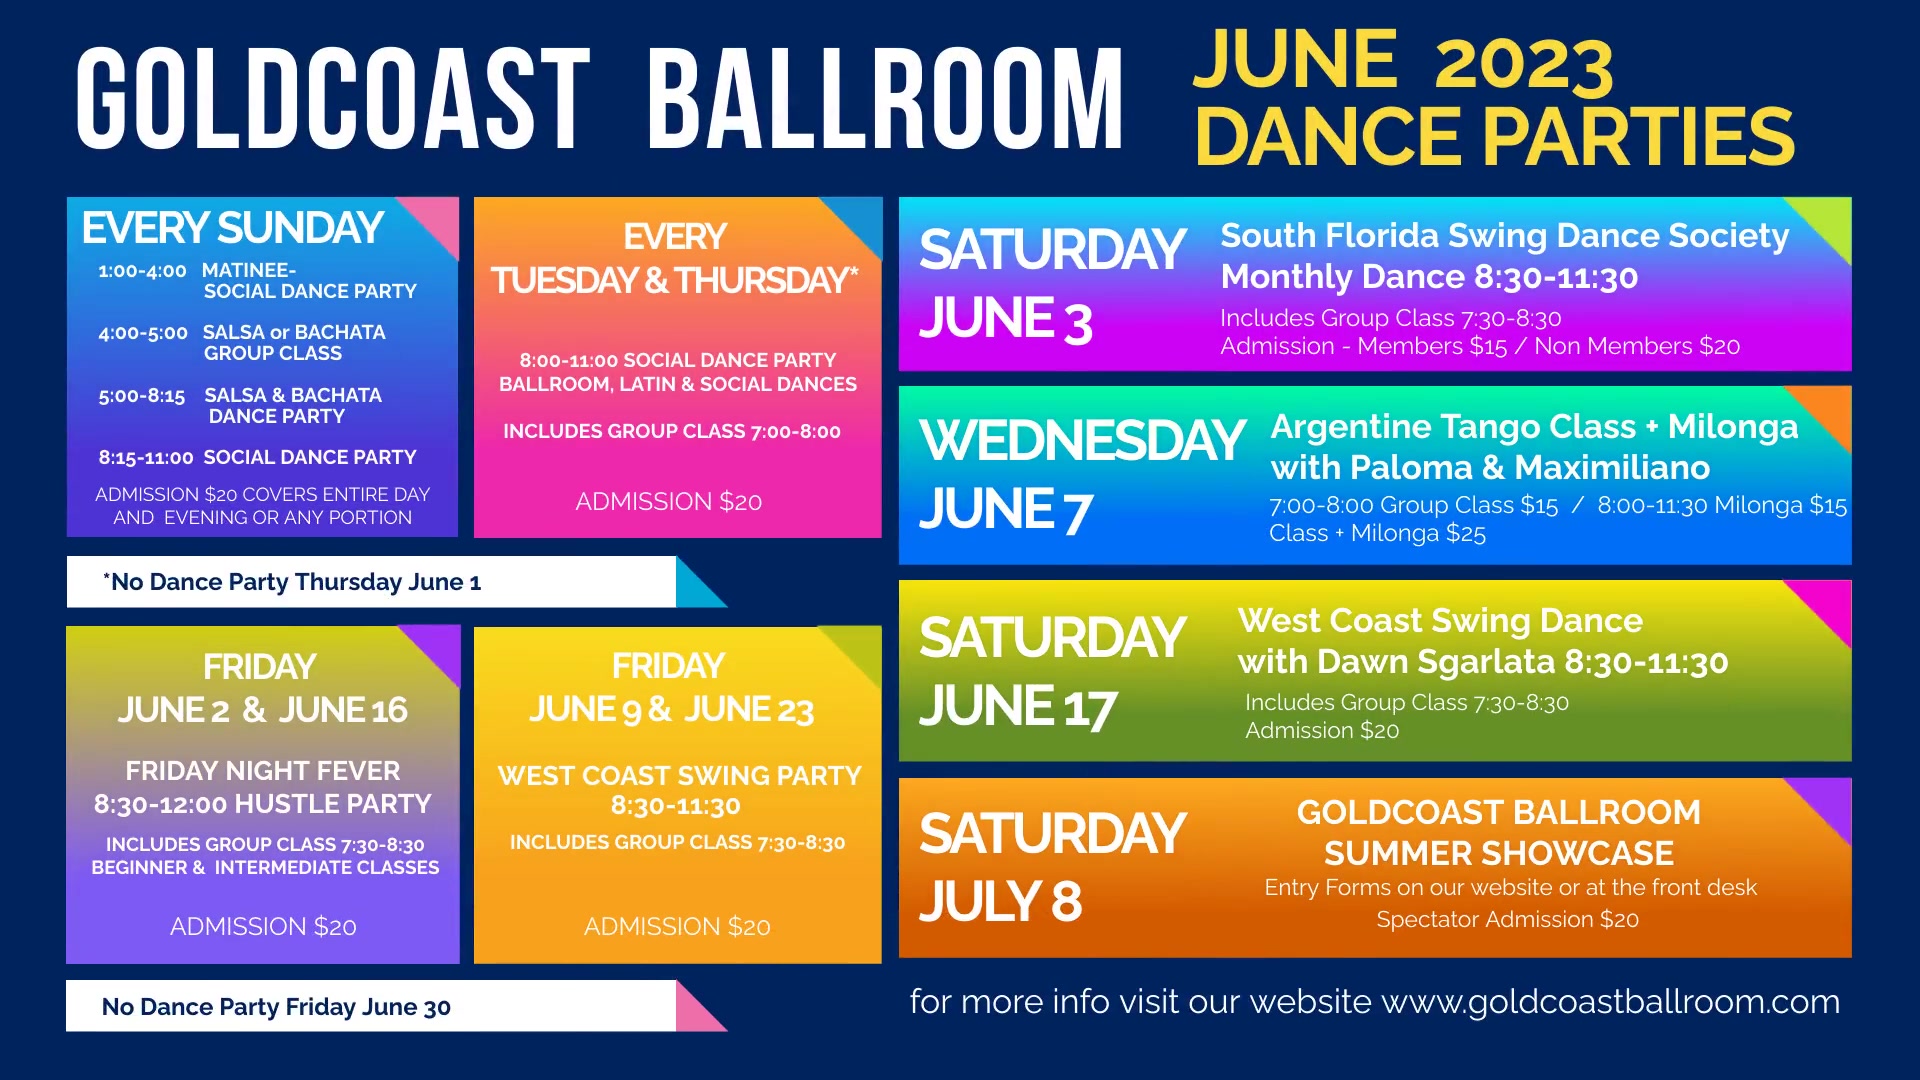 June 2023 Upcoming Events at Goldcoast Ballroom -  Digital Display by Vinny